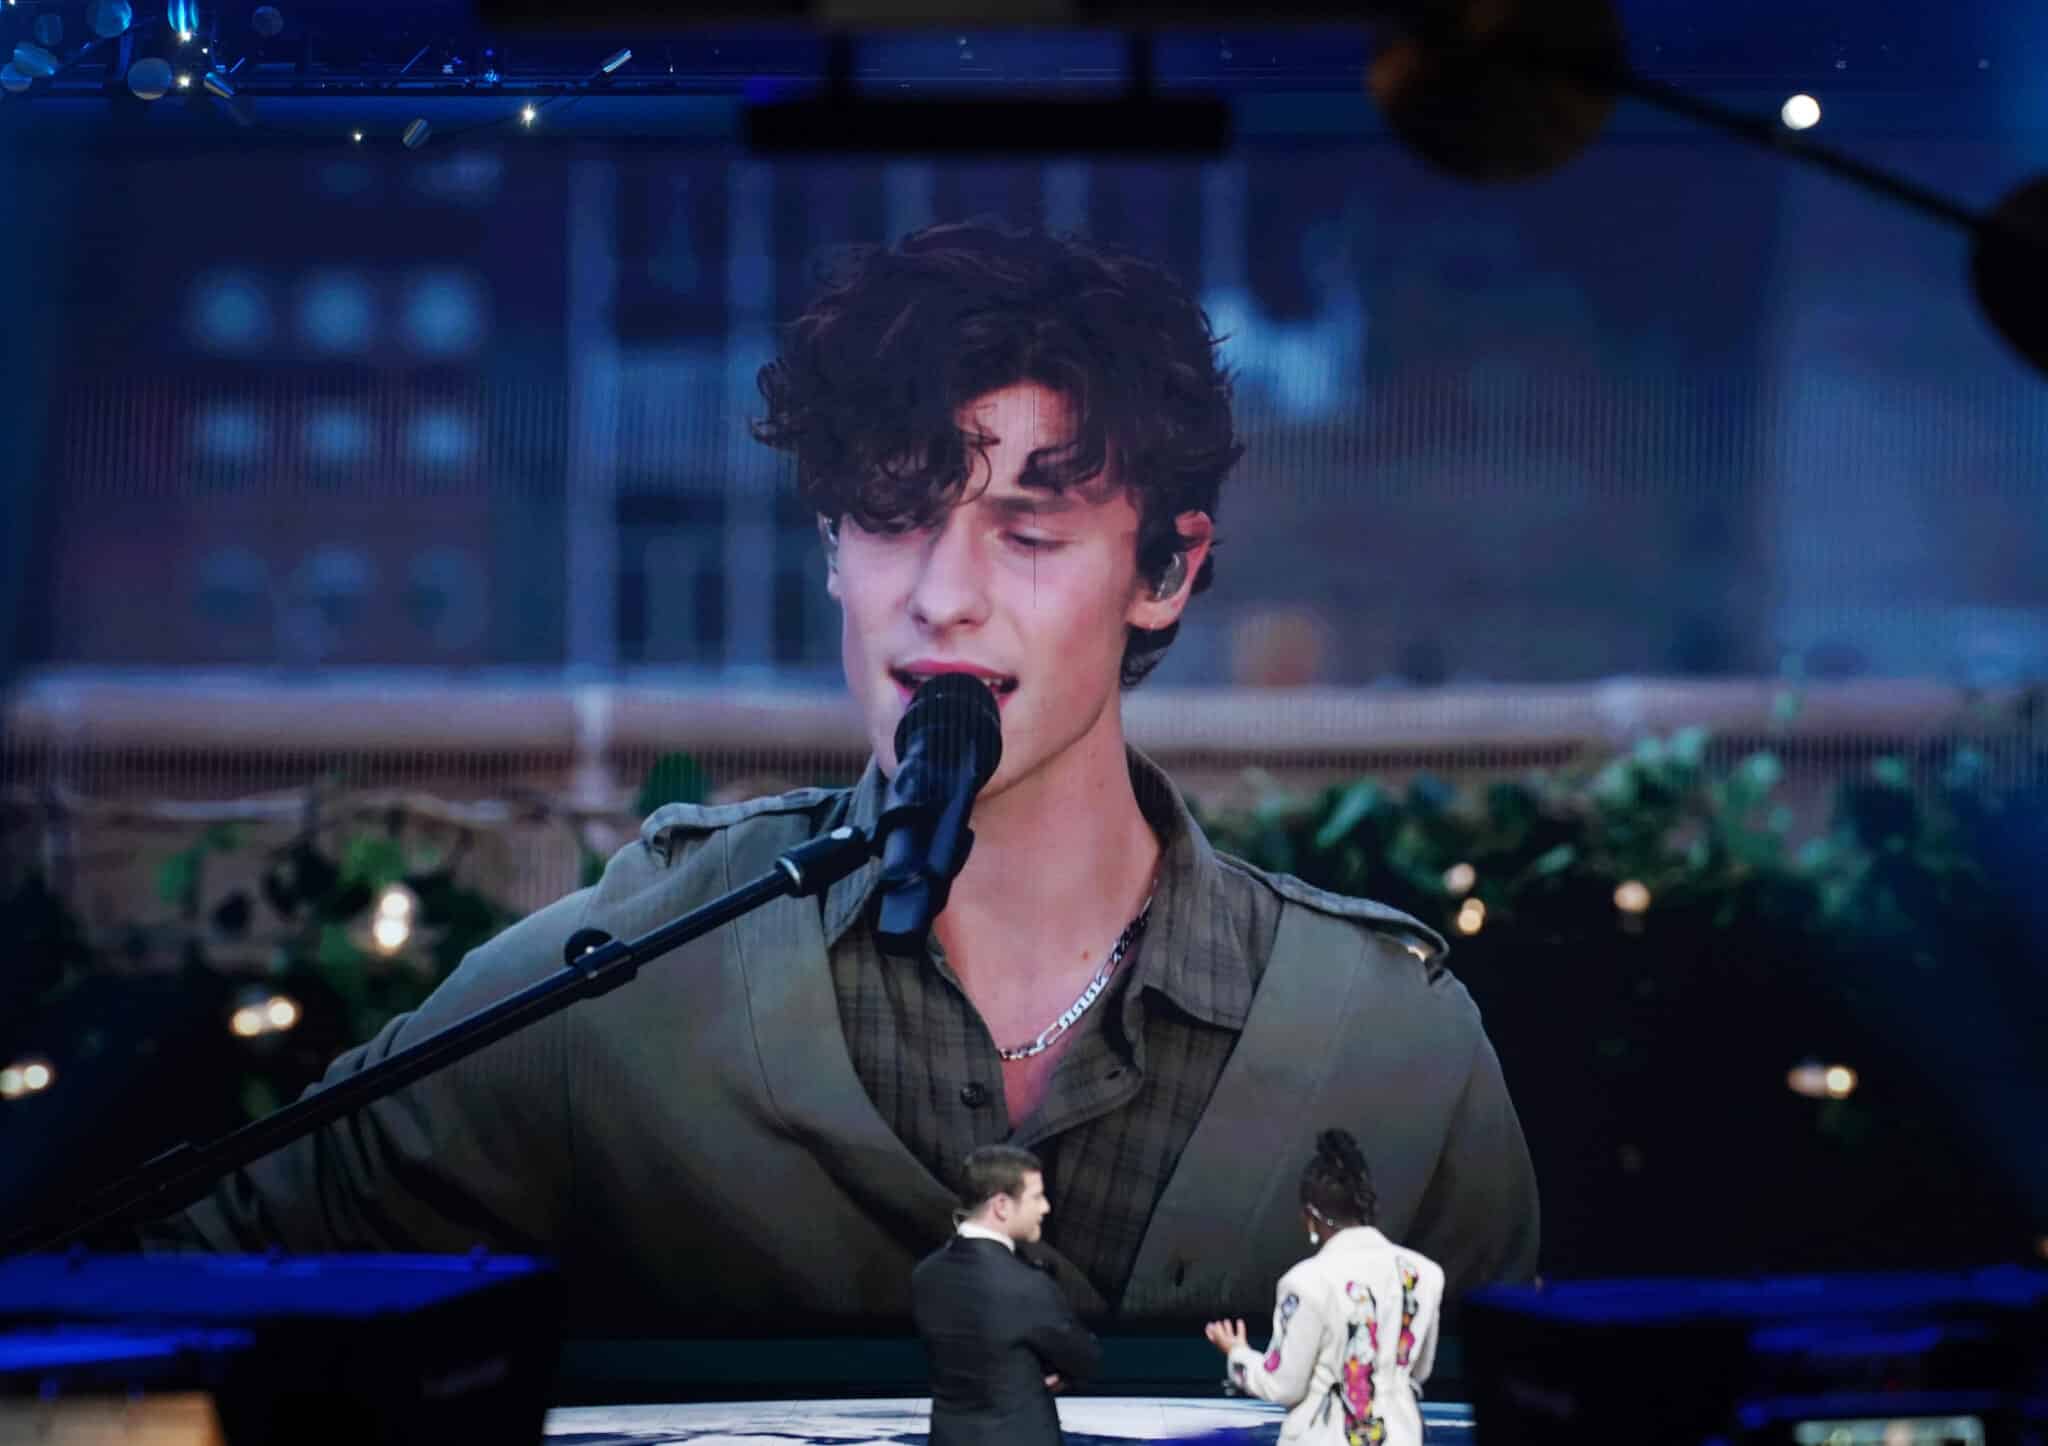 Una actuación pregrabada del cantante canadiense Shawn Mendes se muestra en el escenario